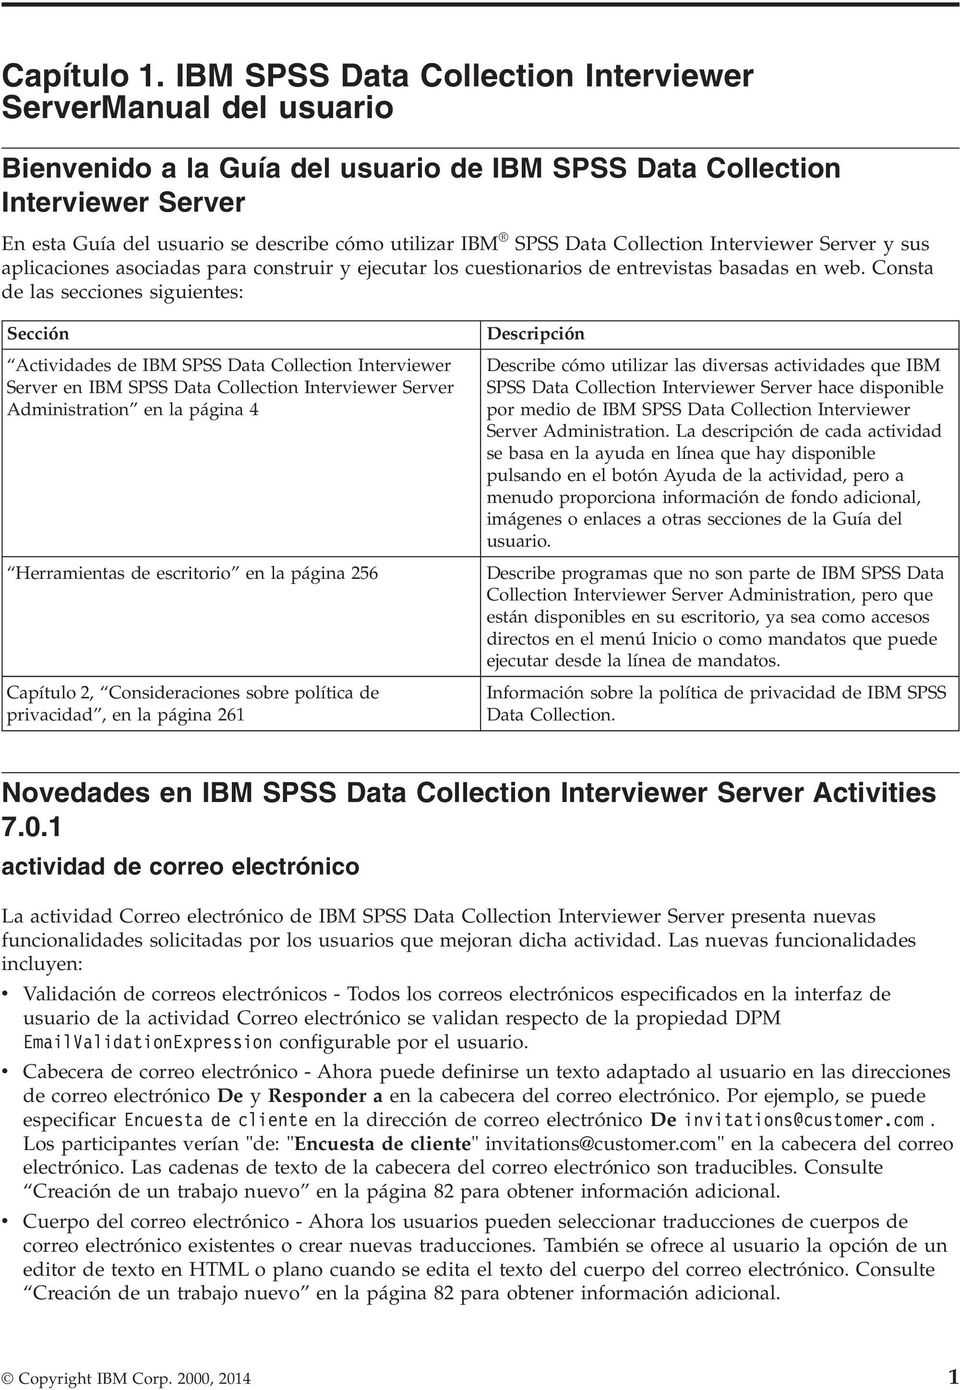 SPSS Data Collection Interviewer Server y sus aplicaciones asociadas para construir y ejecutar los cuestionarios de entrevistas basadas en web.